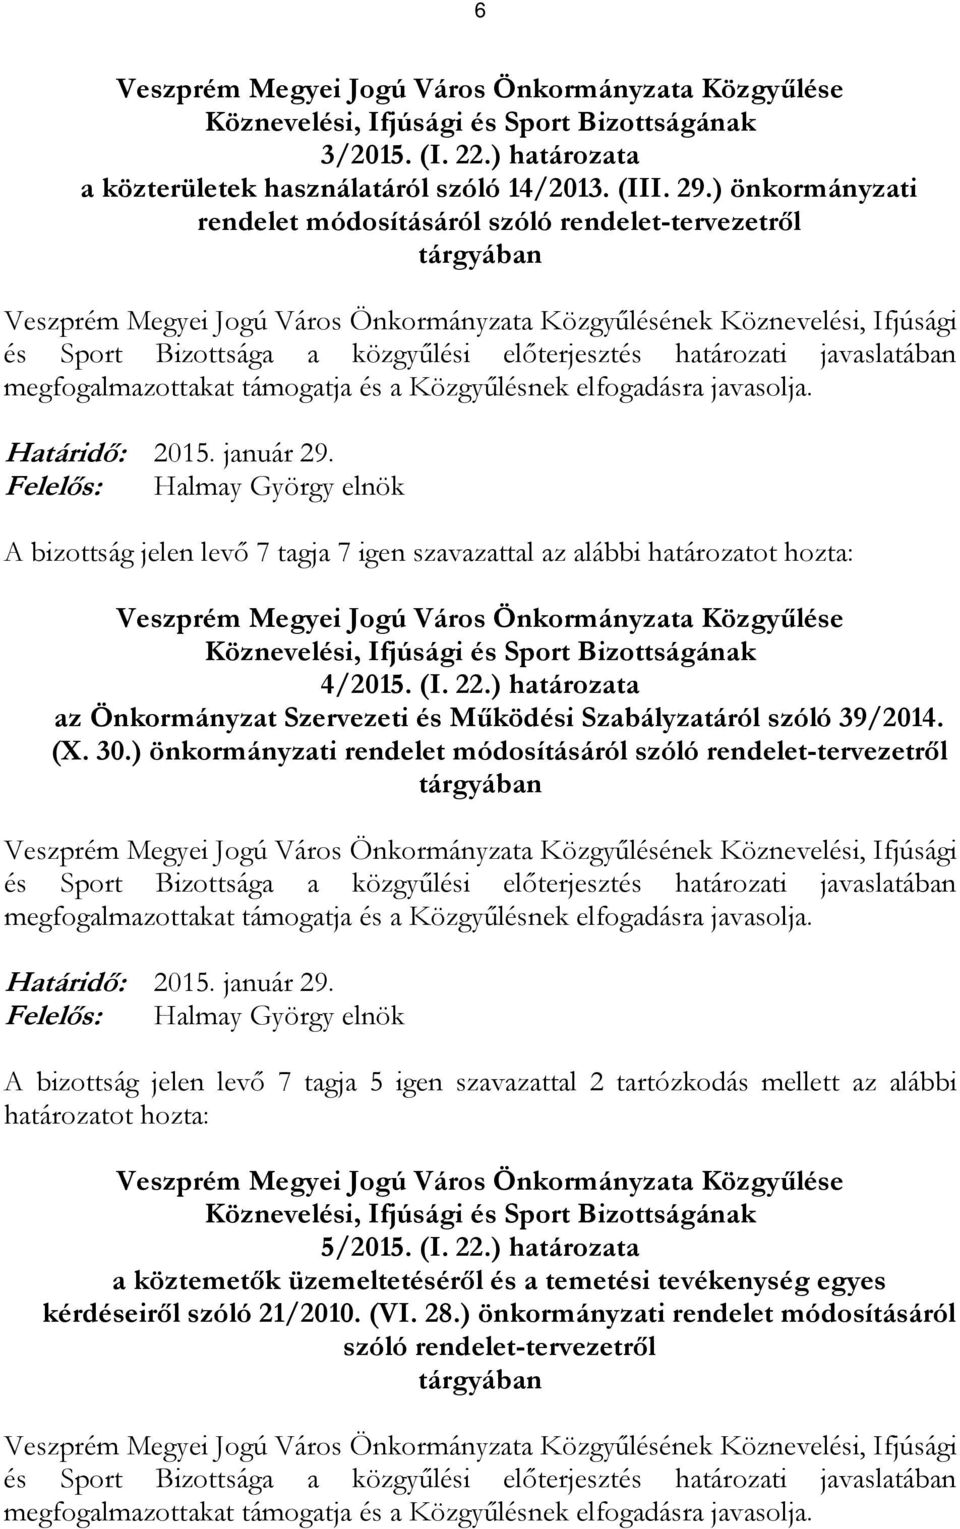 határozatot hozta: Veszprém Megyei Jogú Város Önkormányzata Közgyűlése 4/2015. (I. 22.) határozata az Önkormányzat Szervezeti és Működési Szabályzatáról szóló 39/2014. (X. 30.